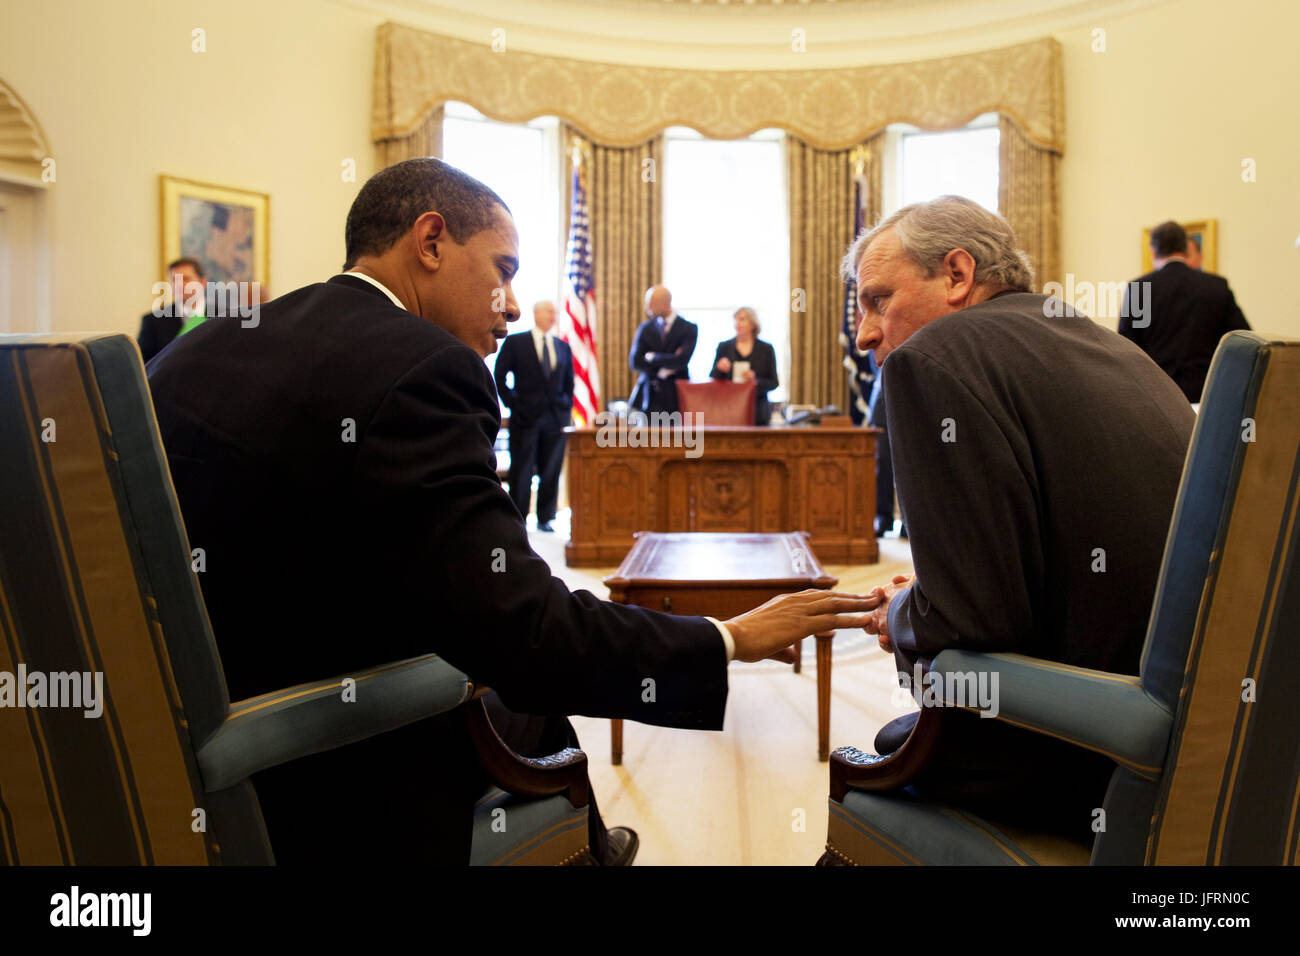 Le président Barack Obama rencontre le Secrétaire général de l'OTAN, Jaap de Hoop Scheffer, dans le bureau ovale 25/03/09. Photo Officiel de la Maison Blanche par Pete Souza Banque D'Images